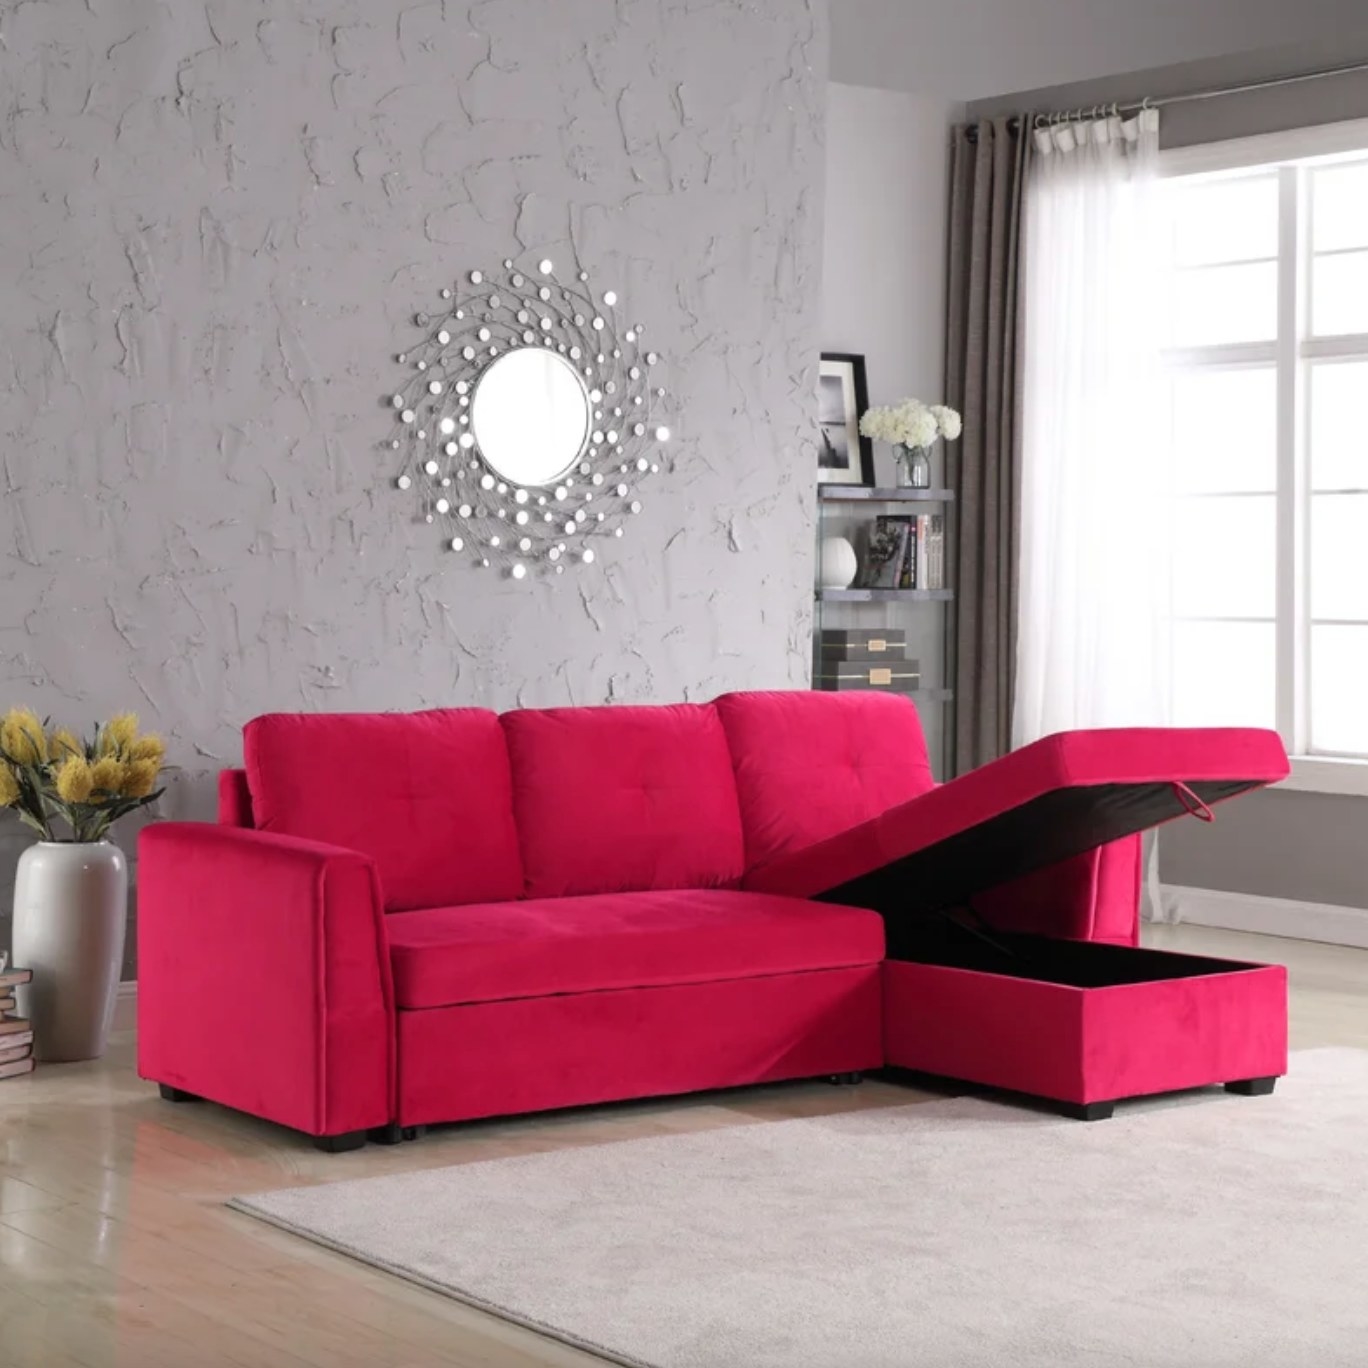 The reddish-pink velvet sofa